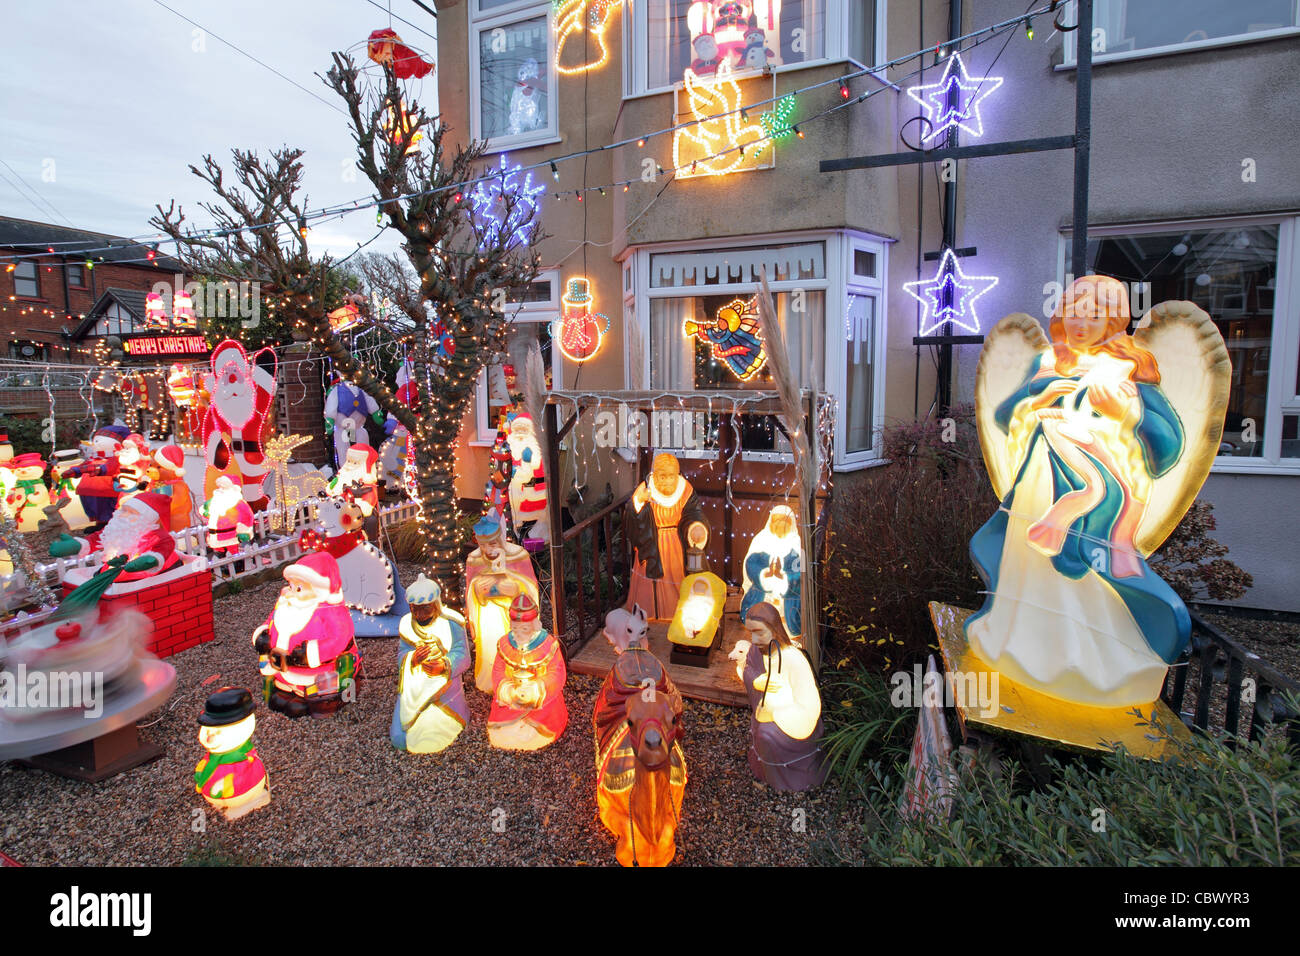 Kitsch Christmas decorations in suburban house garden,Leiston, Suffolk, UK Stock Photo